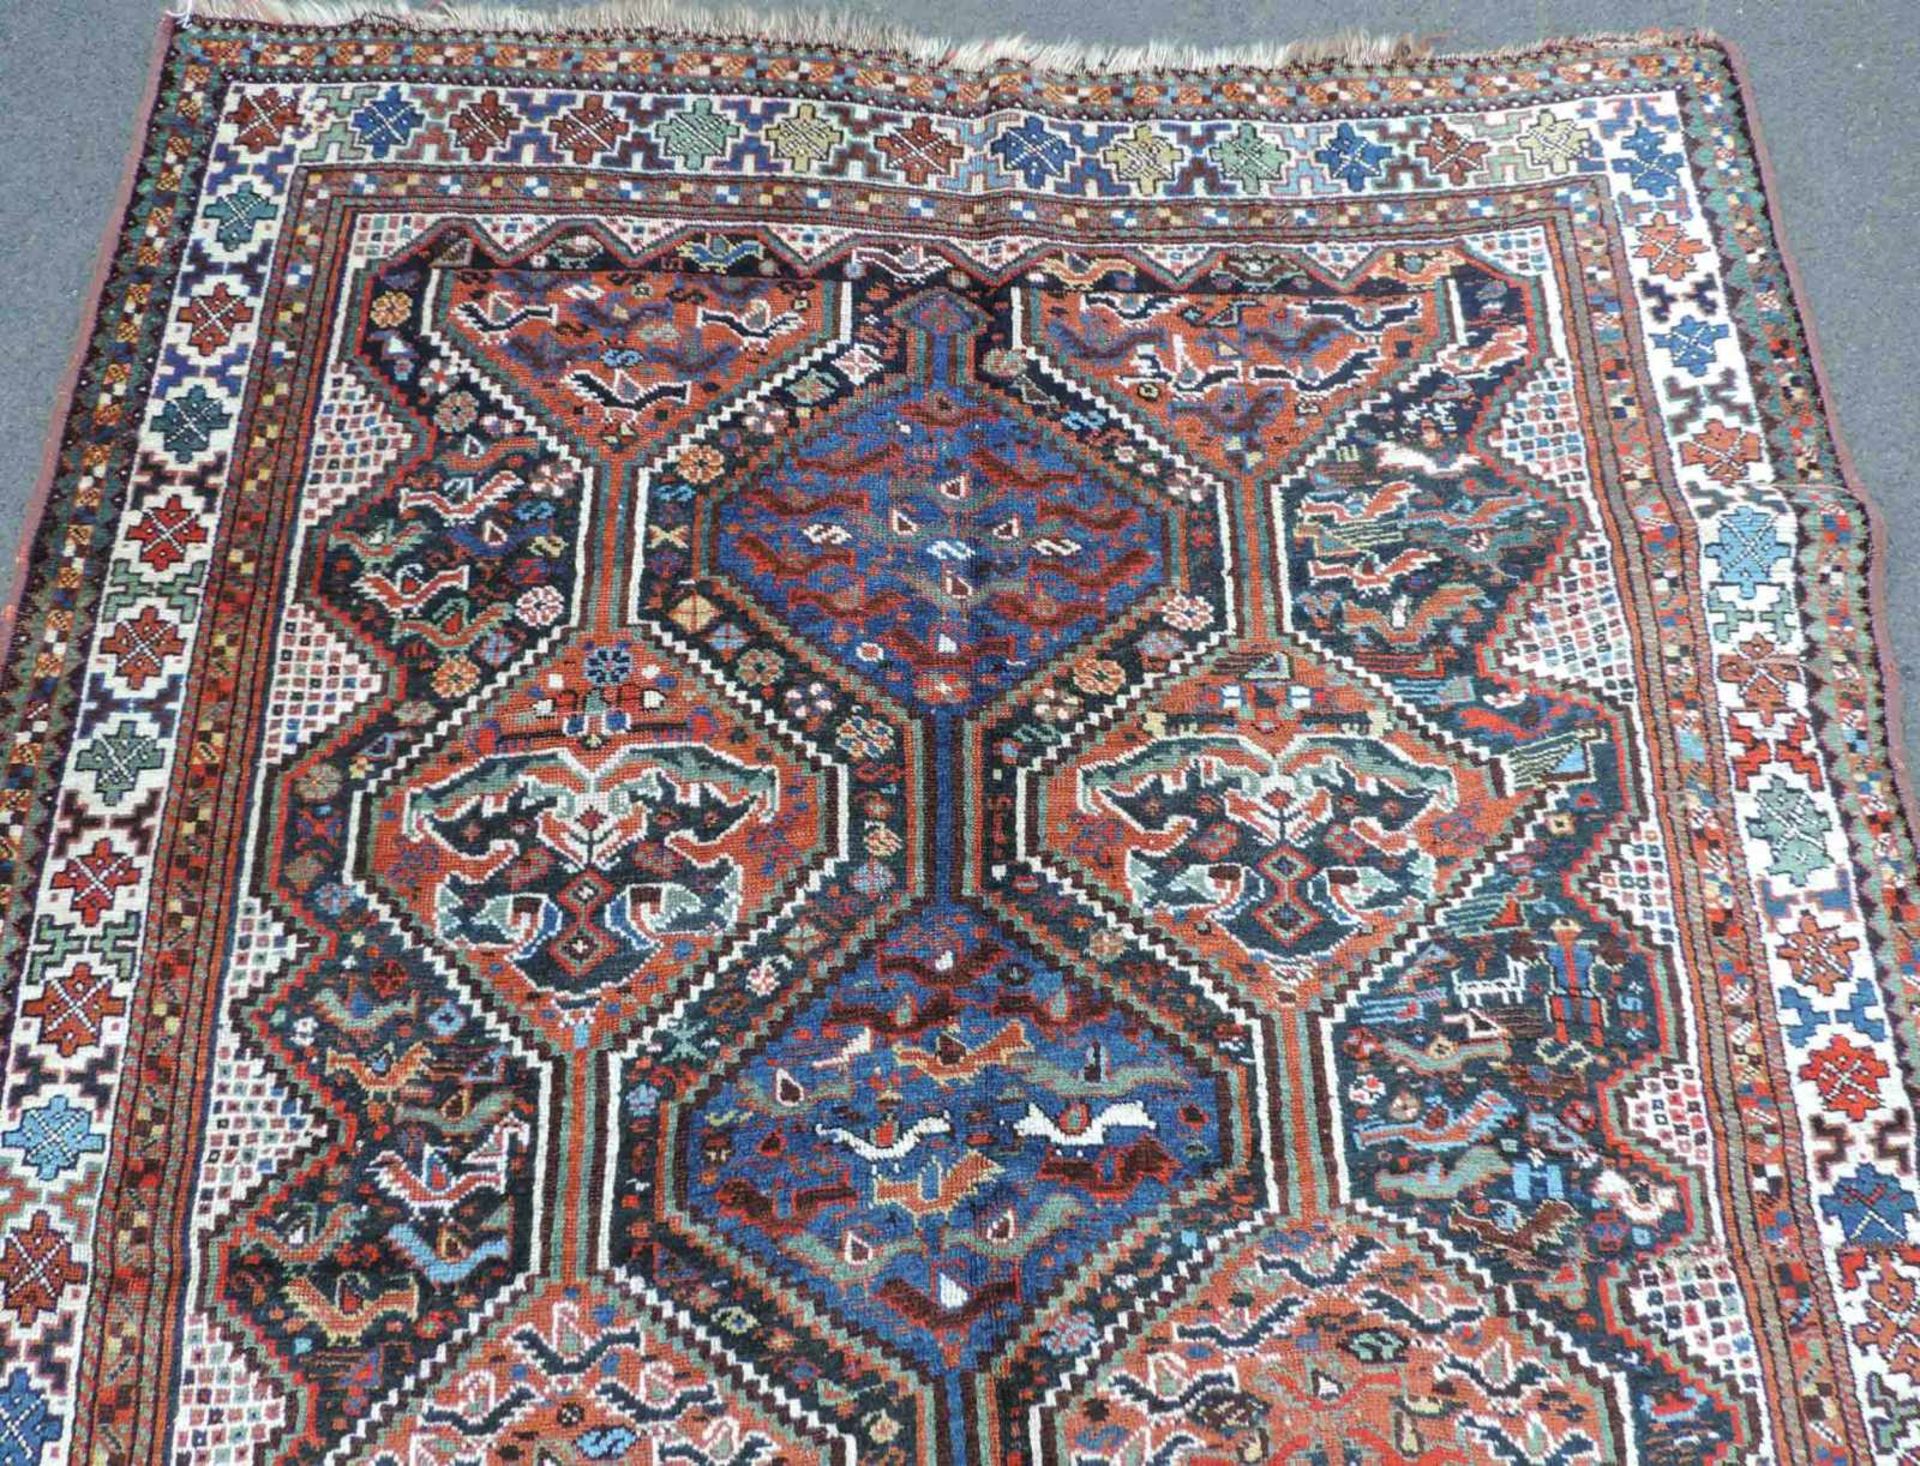 Khamseh Stammesteppich. Iran. Antik, um 1900. 199 cm x 152 cm. Handgeknüpft. Wolle auf Wolle. - Bild 3 aus 5